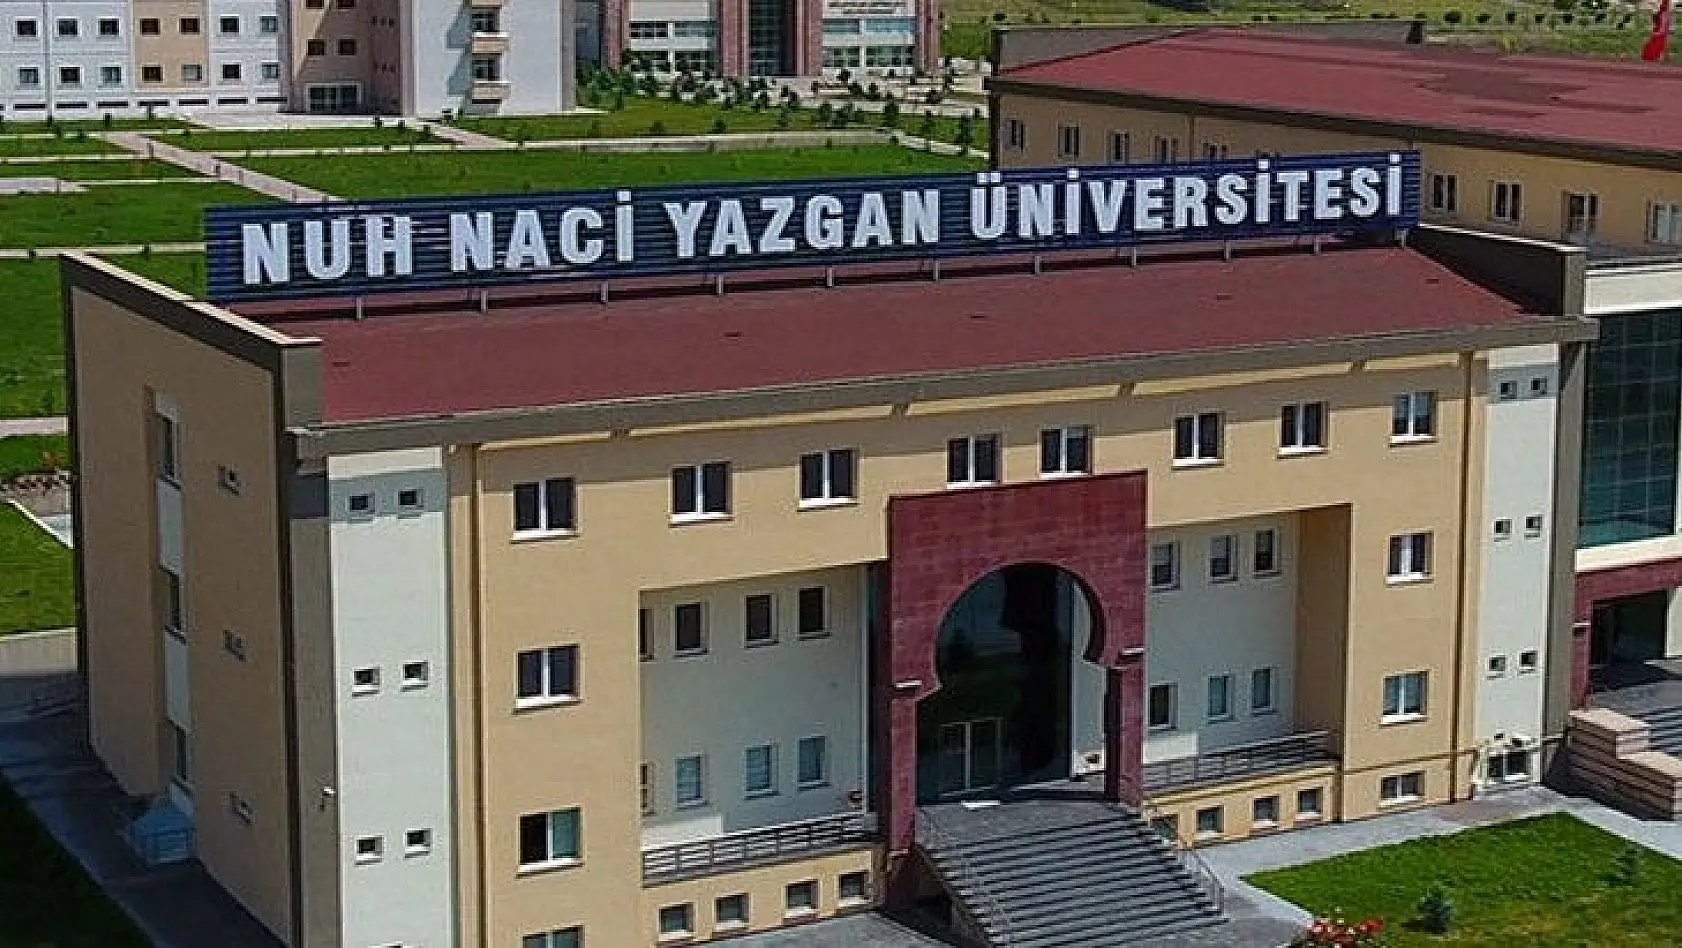 Nuh Naci Yazgan Üniversitesi 1 Öğretim Üyesi alıyor